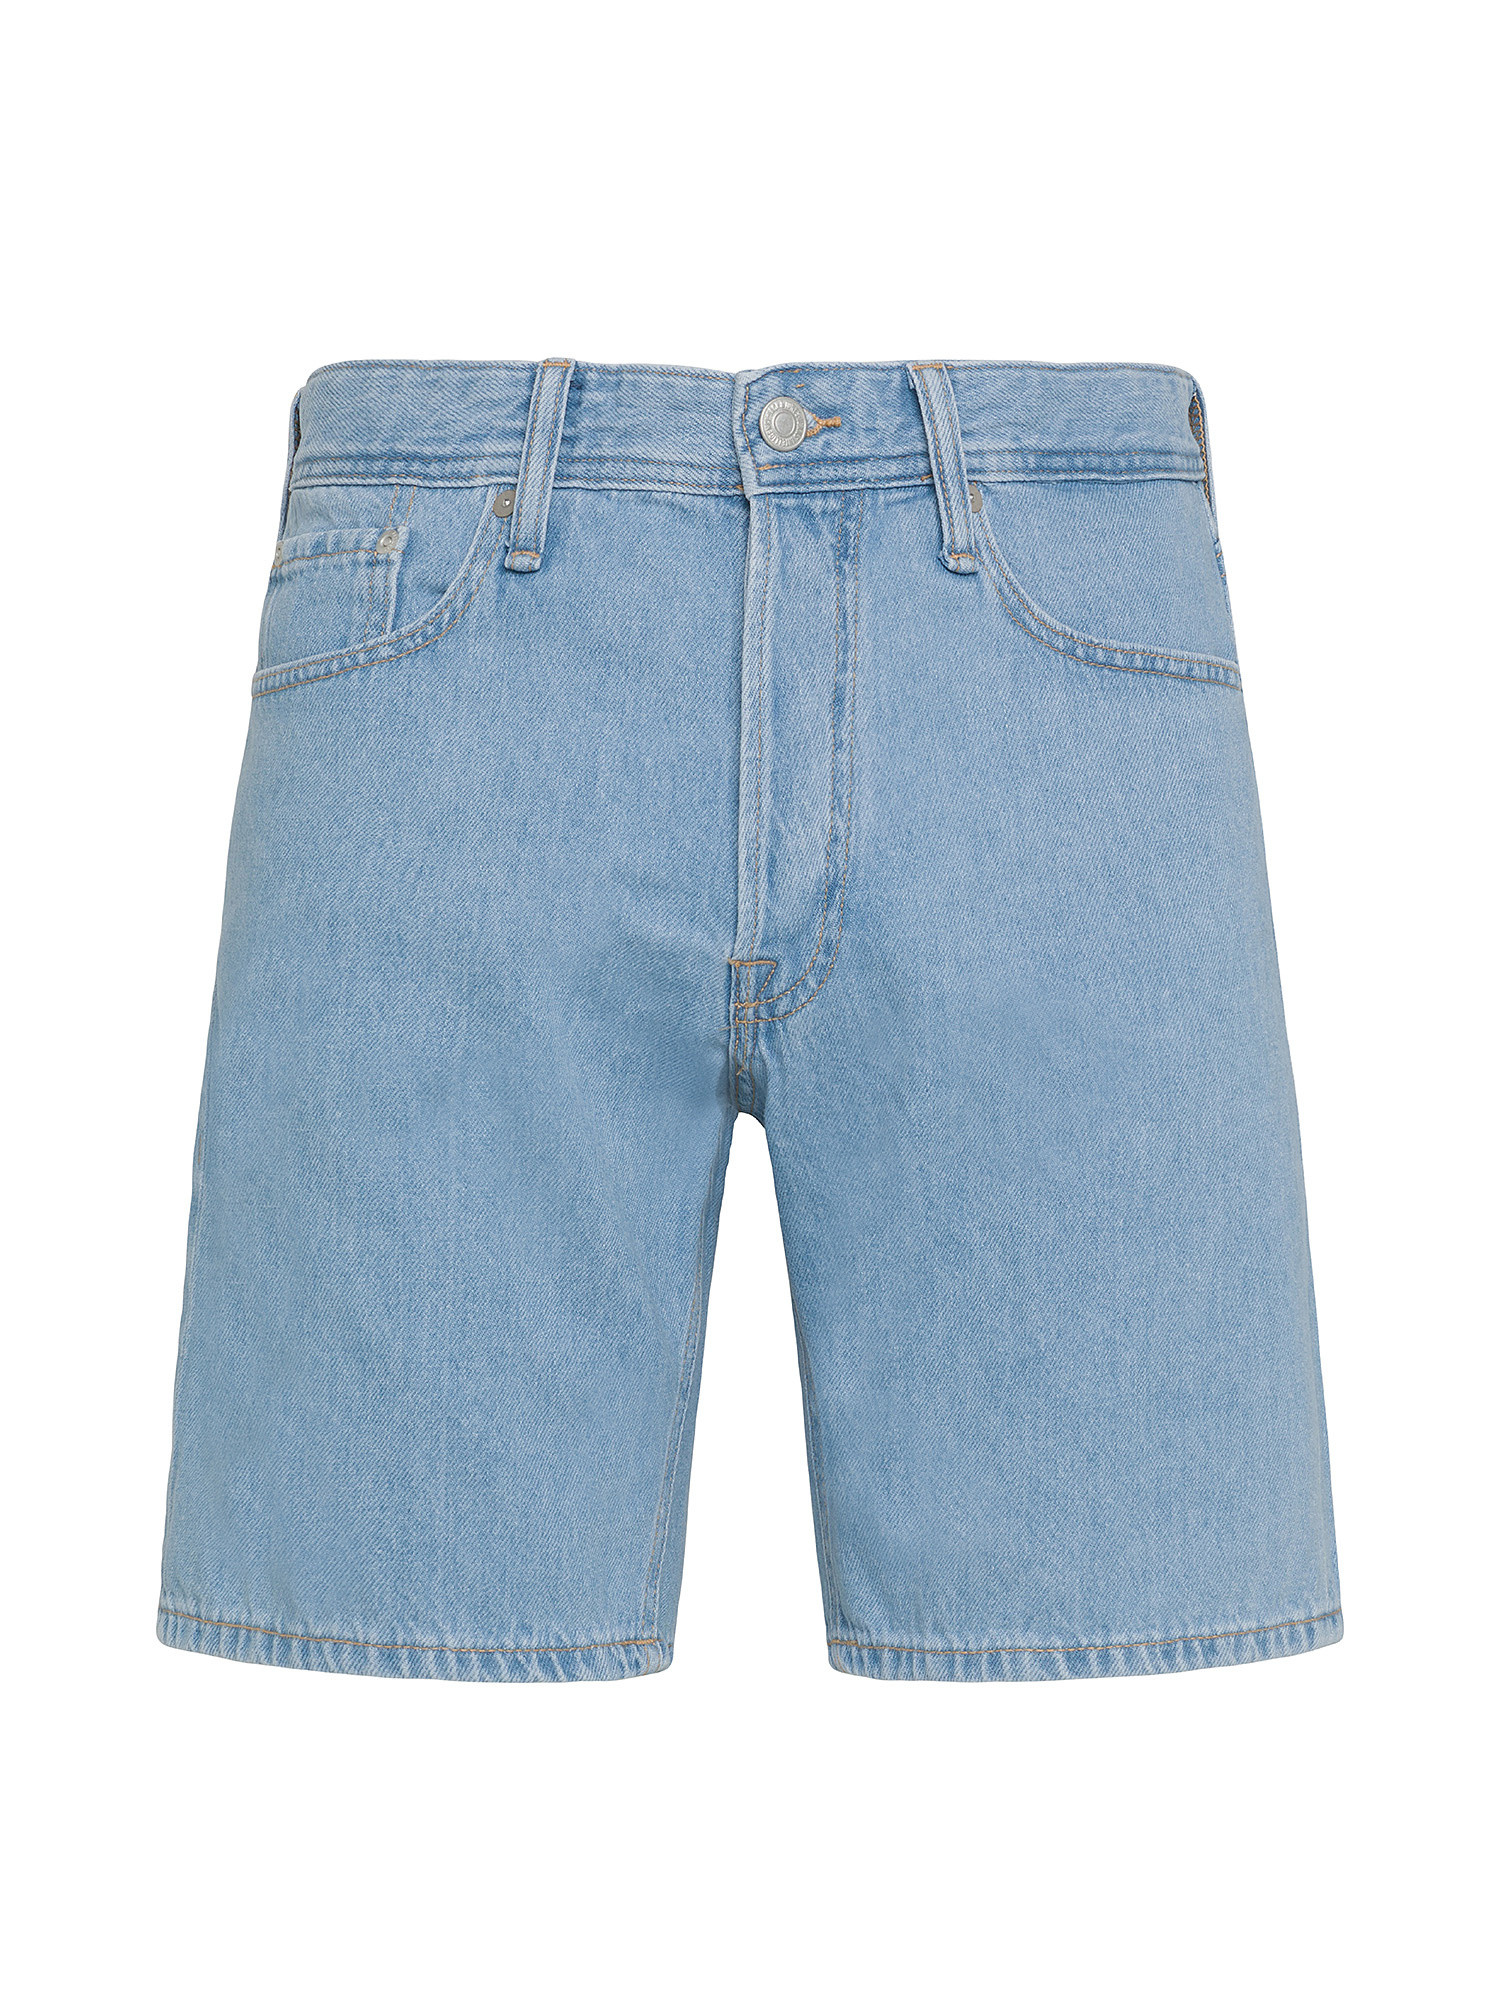 Jack & Jones - Five-pocket jeans bermuda, Denim, large image number 0